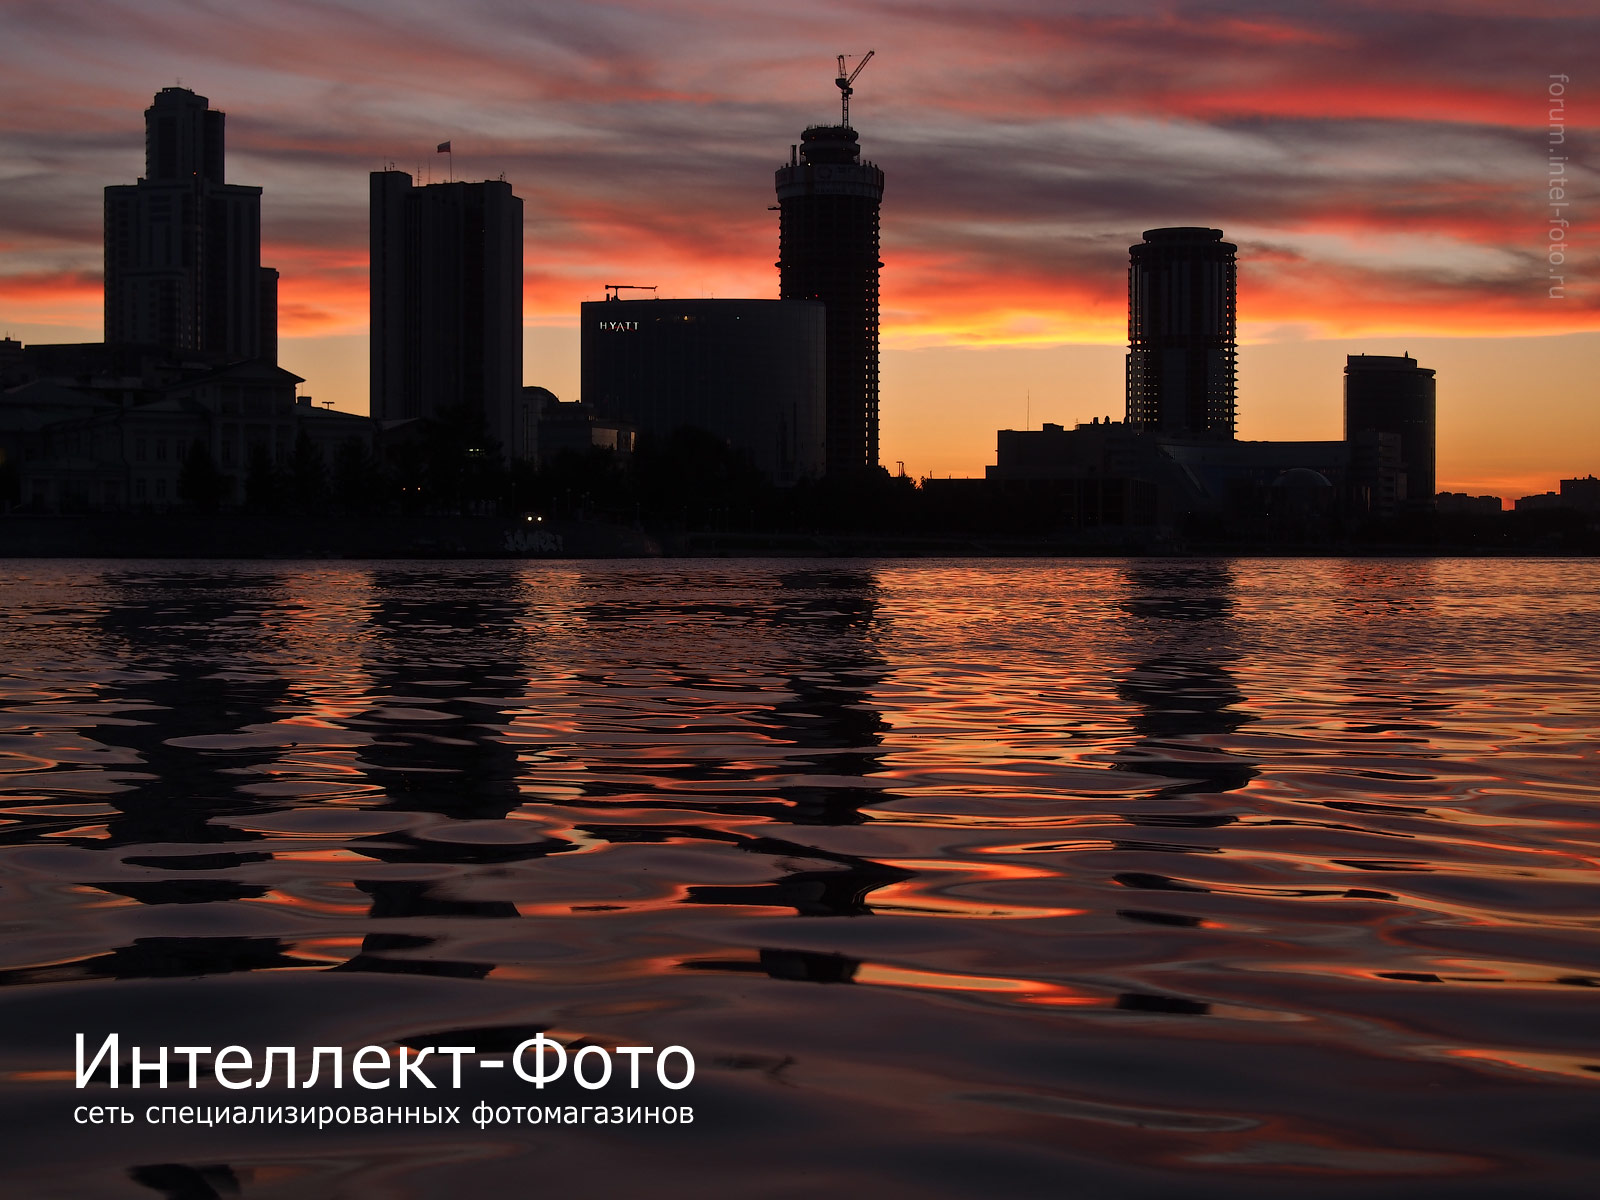 http://www.intel-foto.ru/content/publication/forum-tst/2013/2013-08/PEN_E-P5/tst-p1_cityscape/EP5_1442-02.jpg